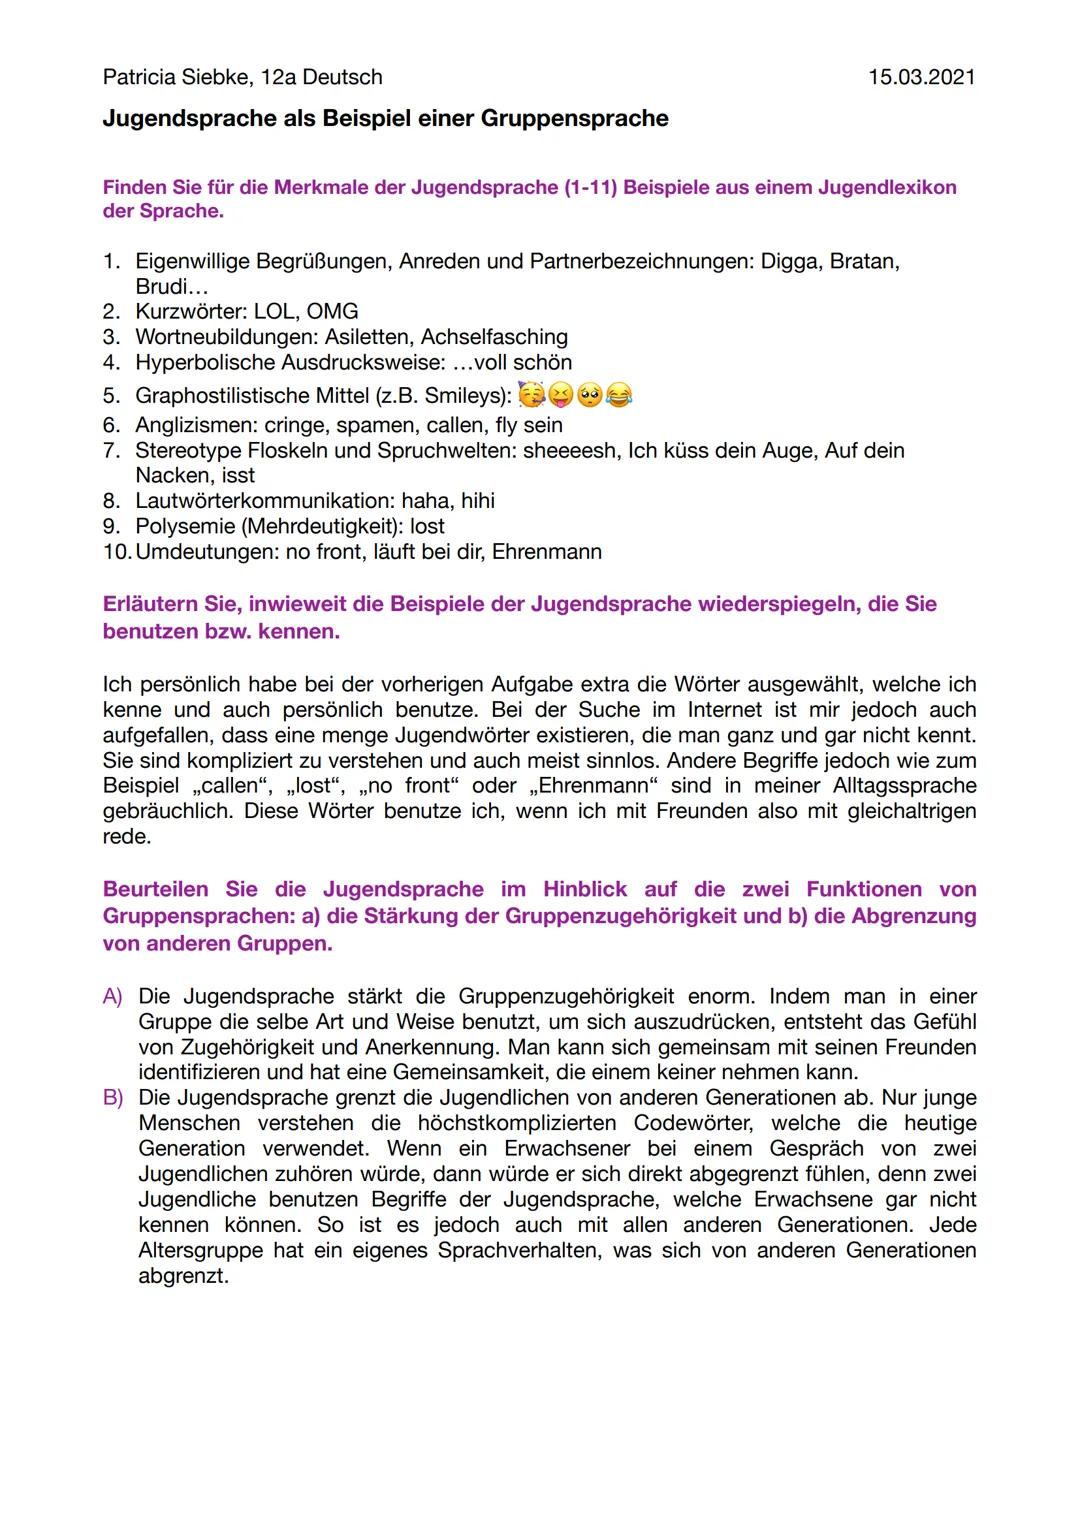 Patricia Siebke, 12a Deutsch
Jugendsprache als Beispiel einer Gruppensprache
Finden Sie für die Merkmale der Jugendsprache (1-11) Beispiele 